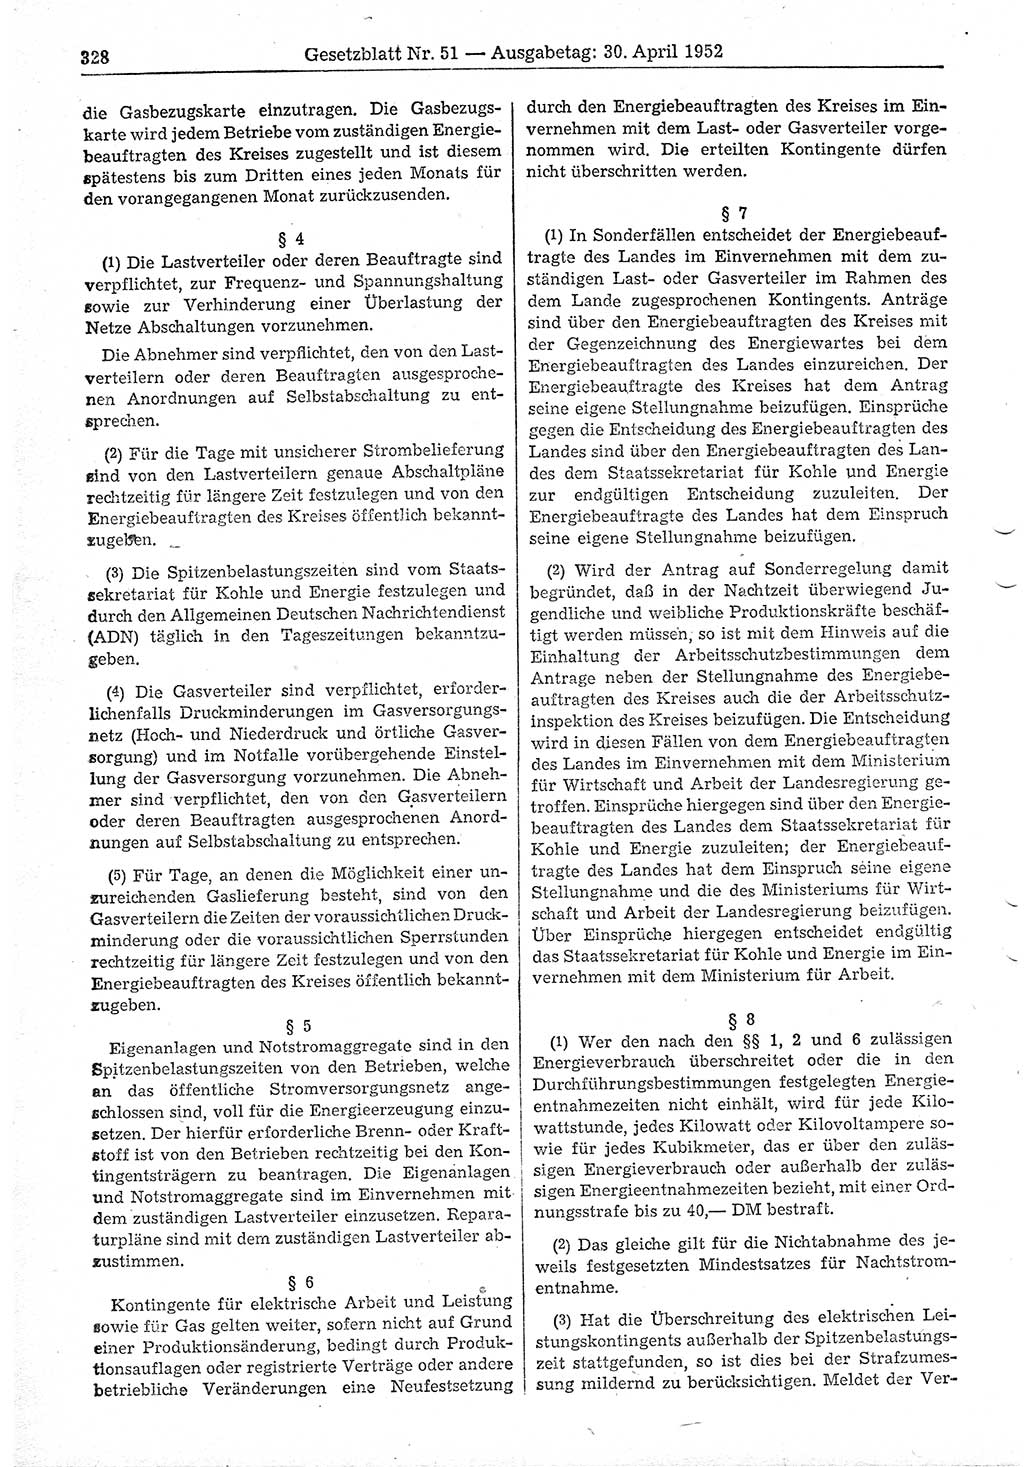 Gesetzblatt (GBl.) der Deutschen Demokratischen Republik (DDR) 1952, Seite 328 (GBl. DDR 1952, S. 328)